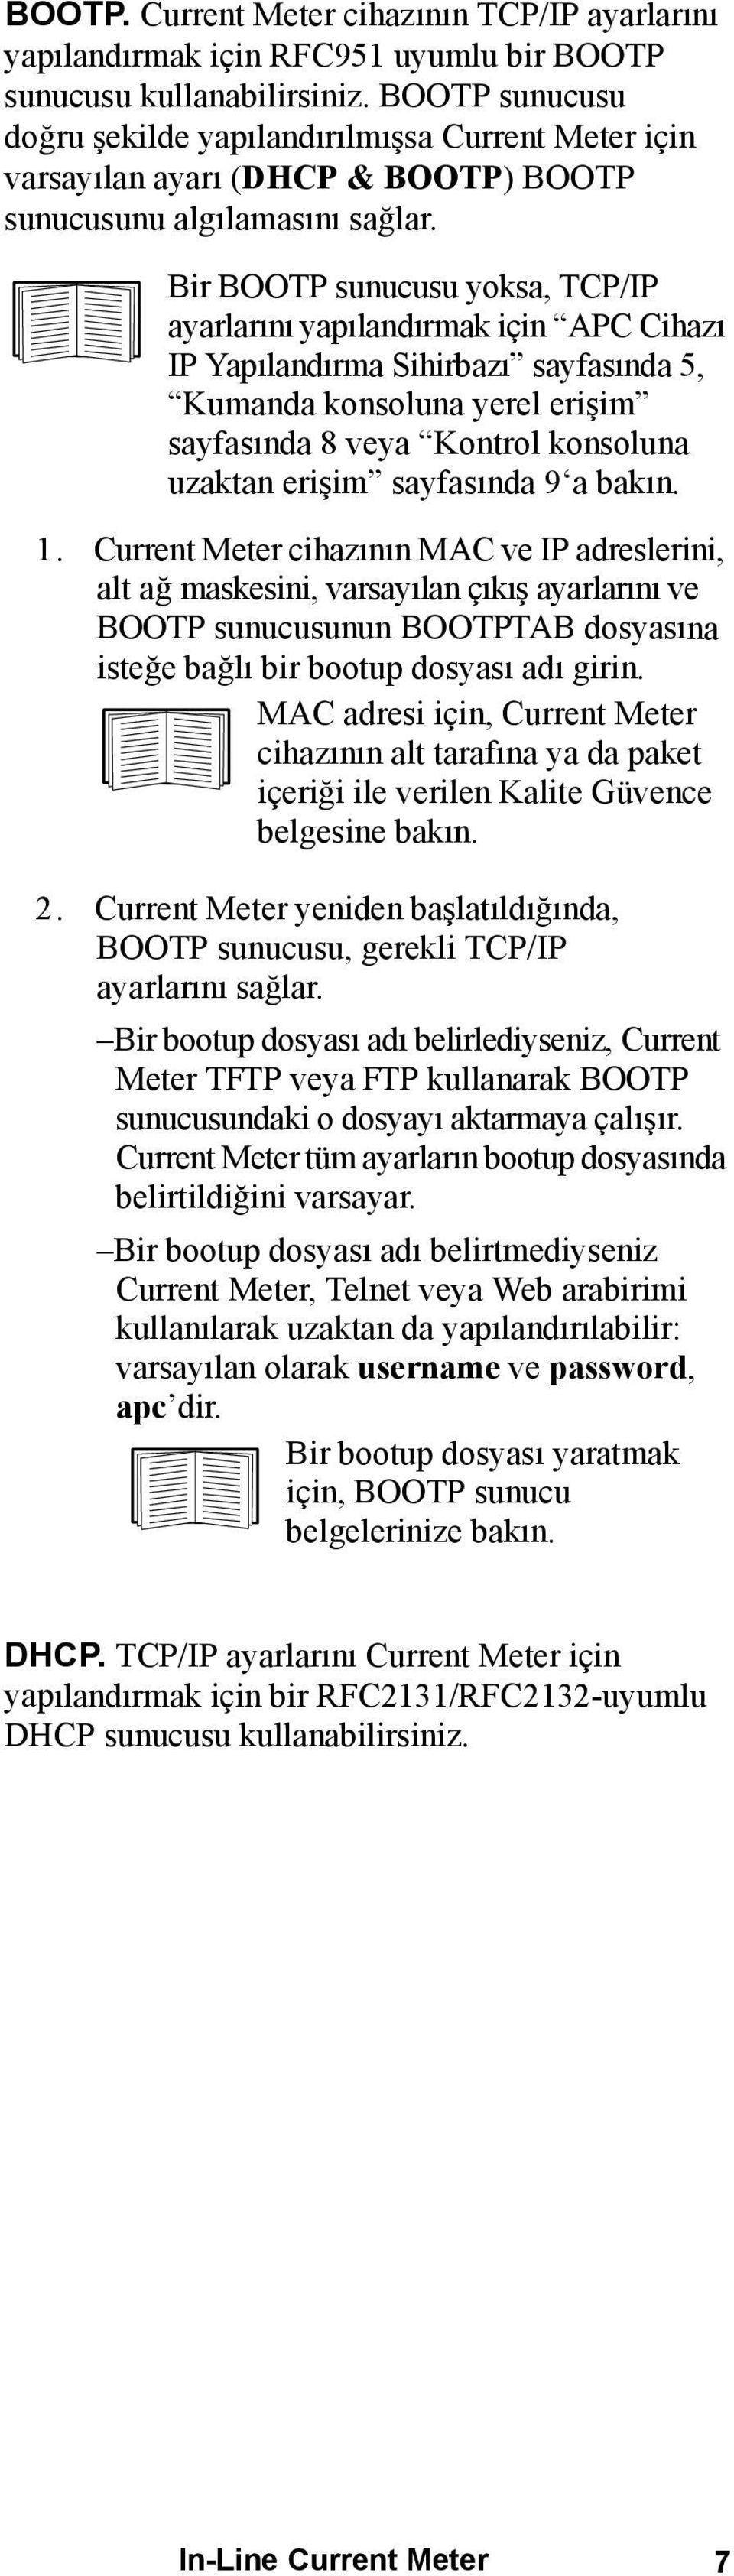 Bir BOOTP sunucusu yoksa, TCP/IP ayarlarını yapılandırmak için APC Cihazı IP Yapılandırma Sihirbazı sayfasında 5, Kumanda konsoluna yerel erişim sayfasında 8 veya Kontrol konsoluna uzaktan erişim